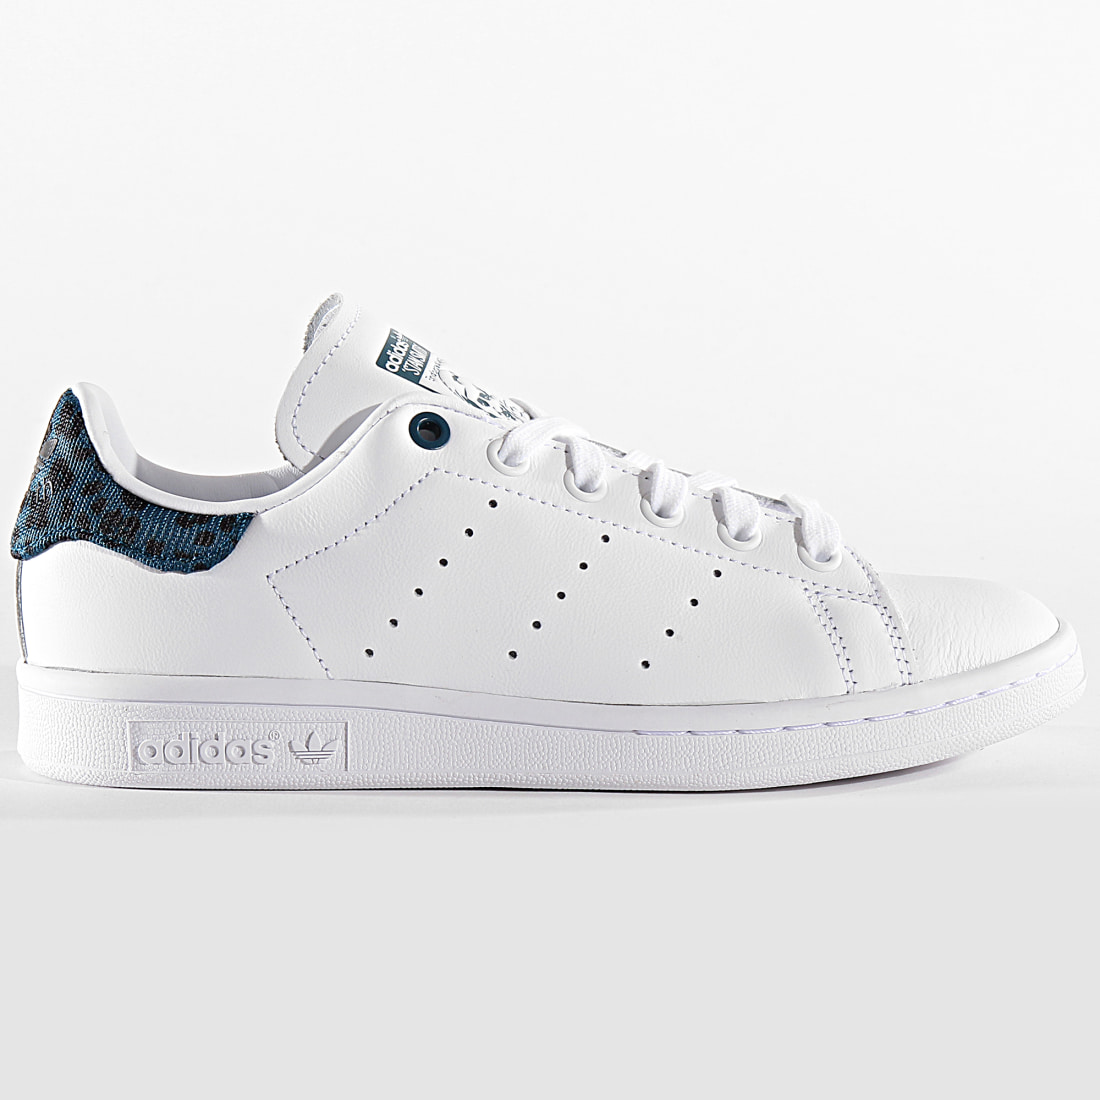 Nautisk nødvendig trojansk hest Adidas Originals - Baskets Femme Stan Smith EE4895 Footwear White Tech Mint  Core Black - LaBoutiqueOfficielle.com